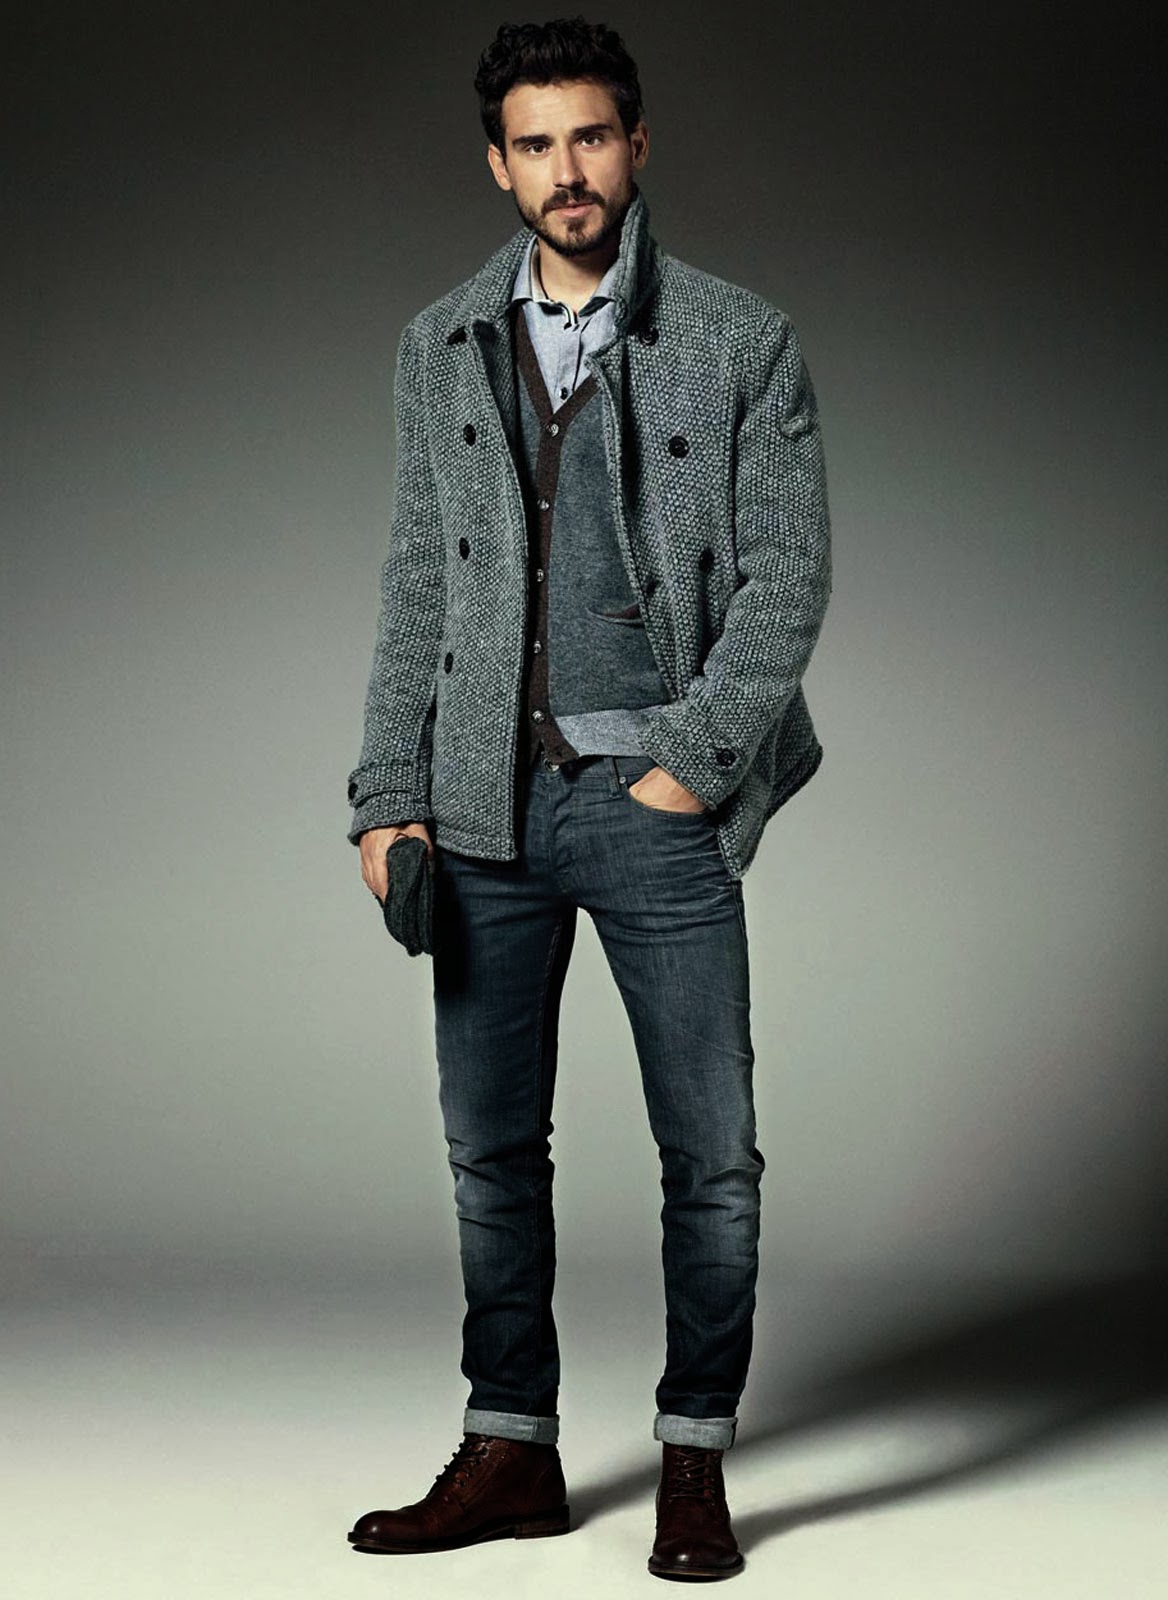 MODELWERK BLOG: gas jeans style guide fw 2014: arthur kulkov